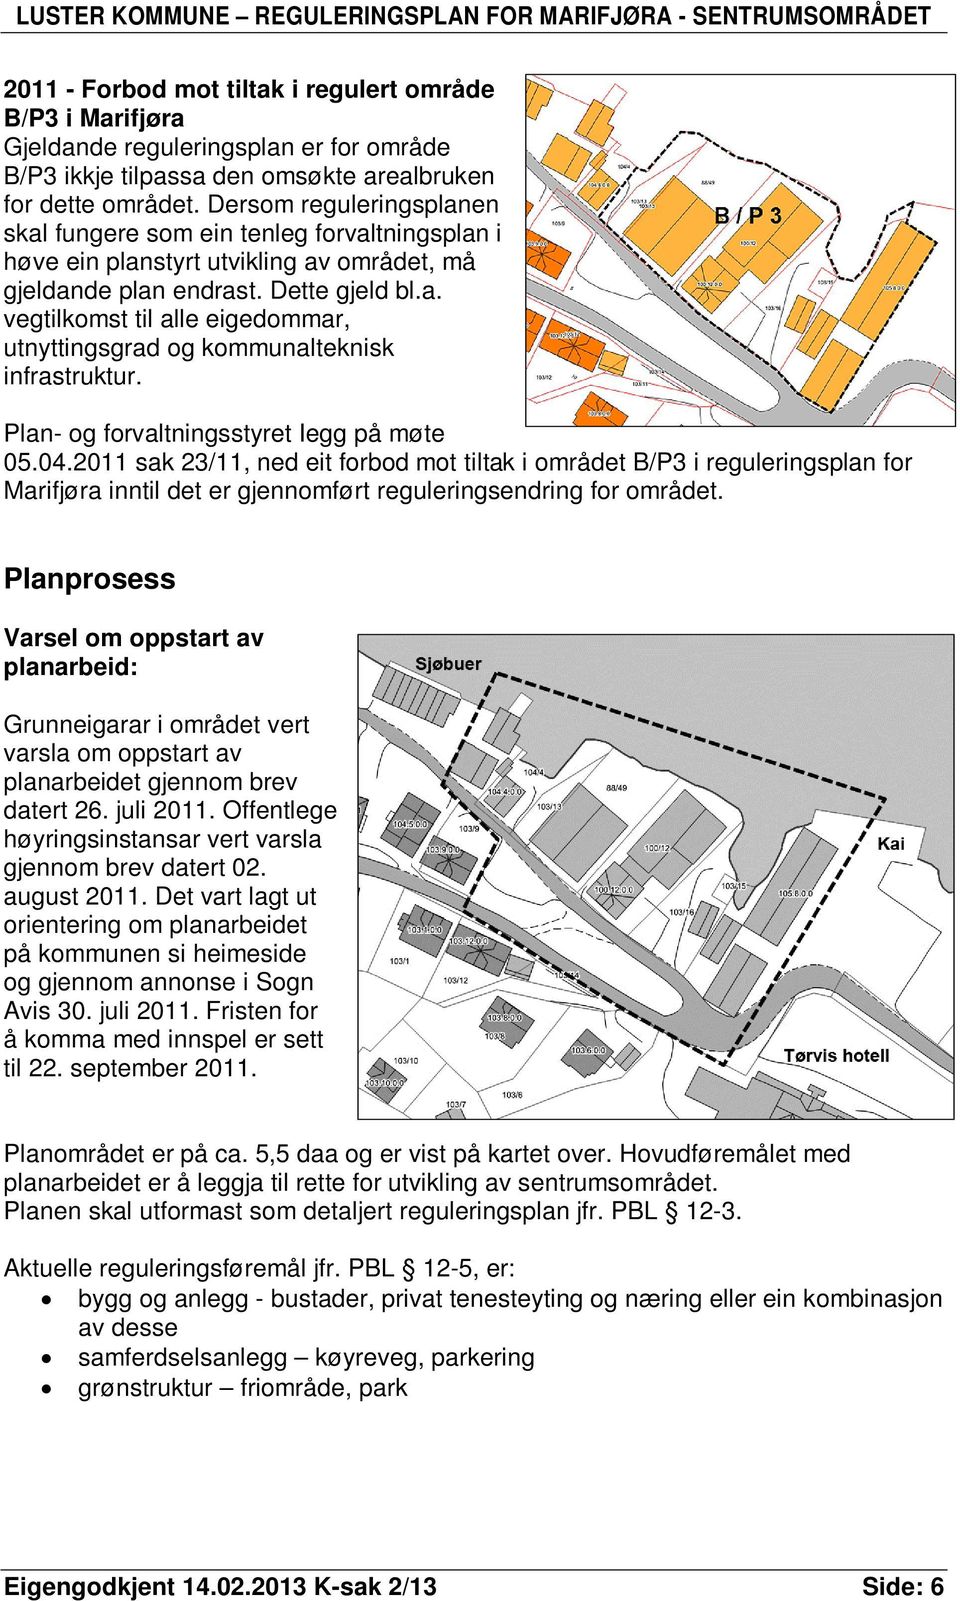 Plan- og forvaltningsstyret Iegg på møte 05.04.2011 sak 23/11, ned eit forbod mot tiltak i området B/P3 i reguleringsplan for Marifjøra inntil det er gjennomført reguleringsendring for området.